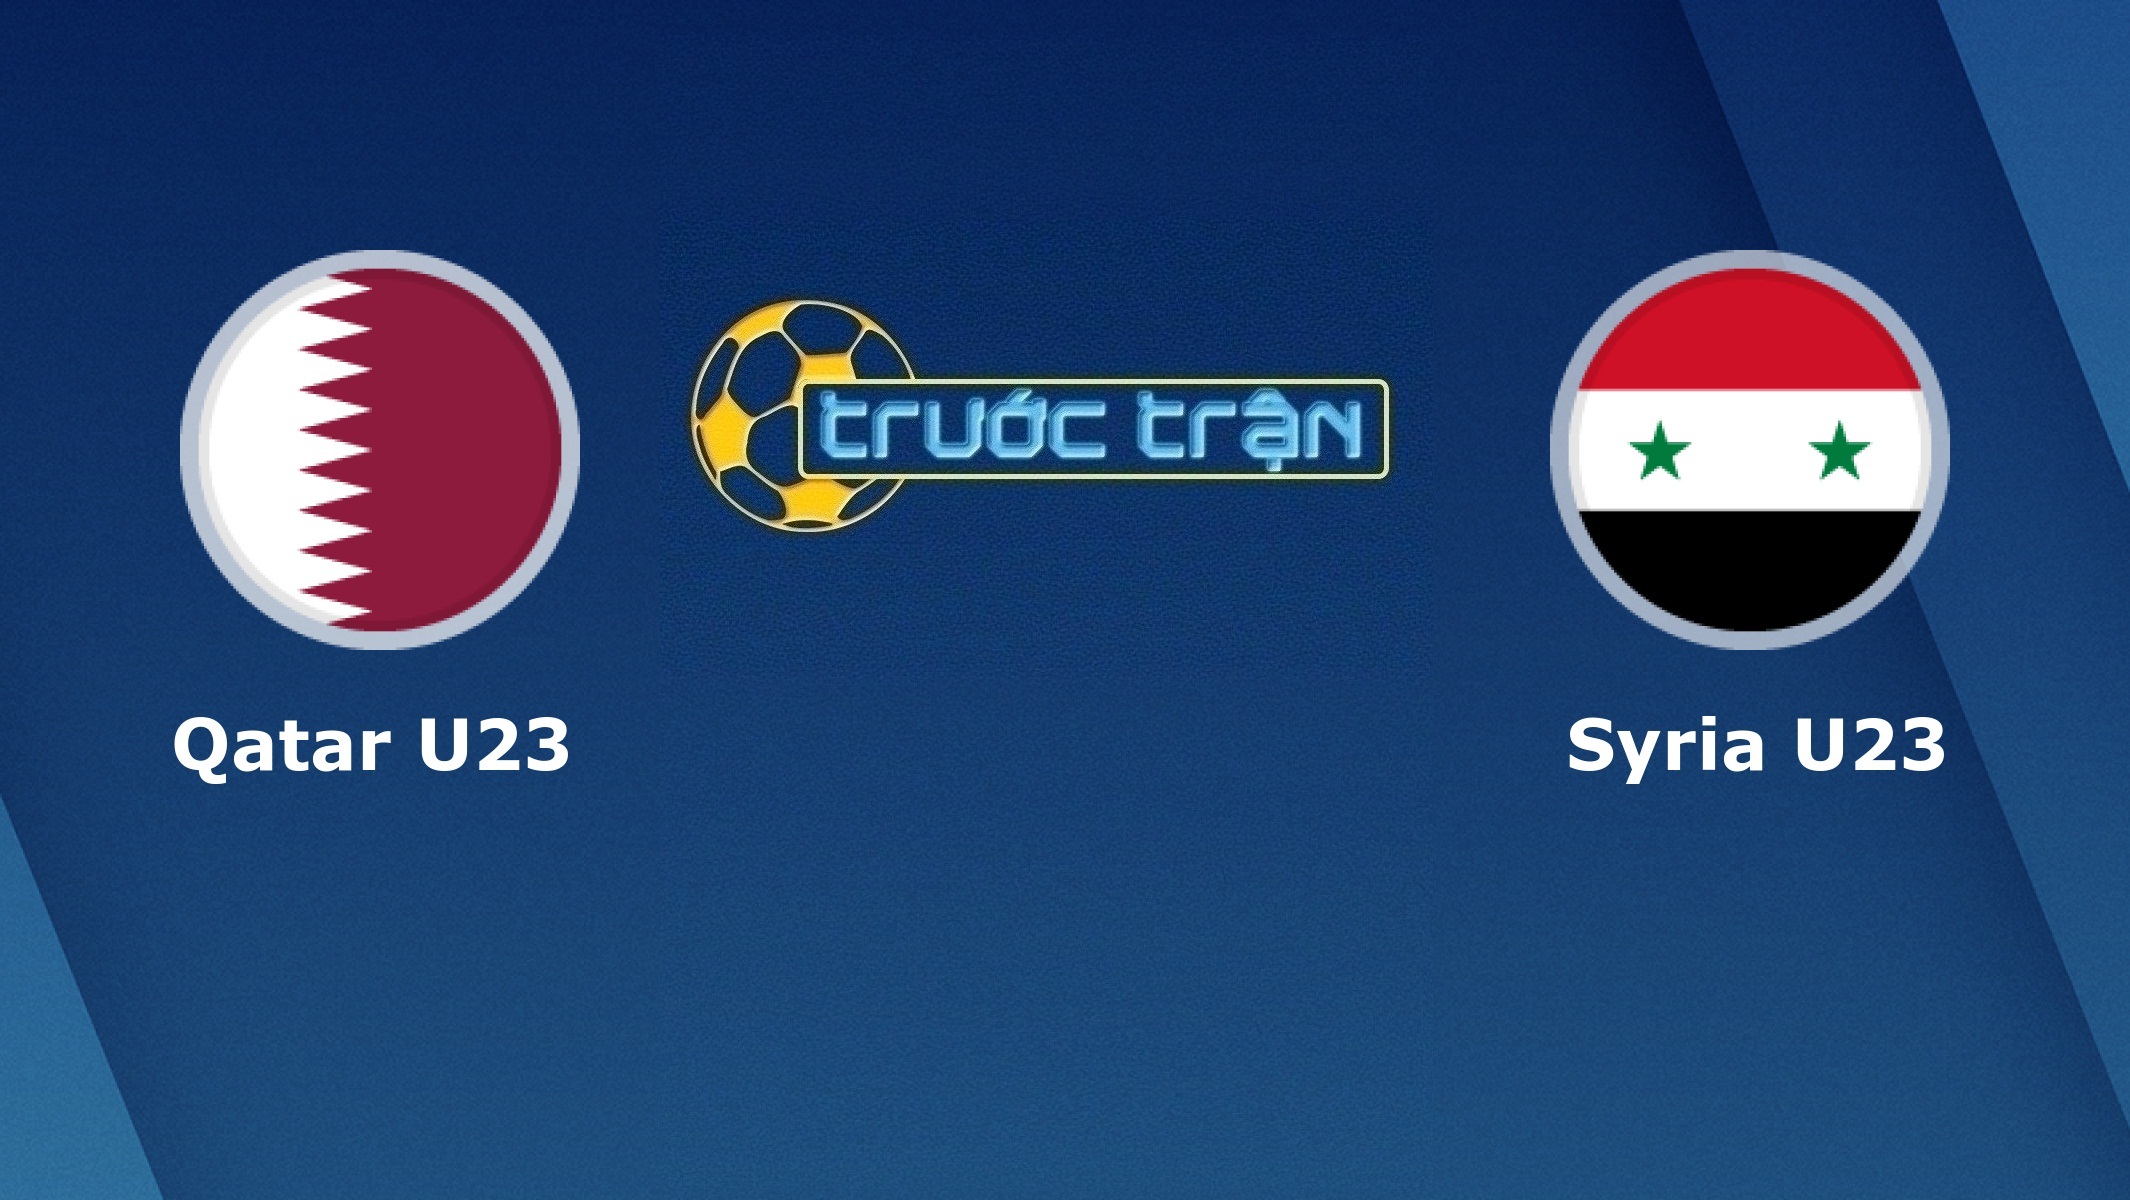 Qatar U23 vs Syria U23 – Tip kèo bóng đá hôm nay – 09/01